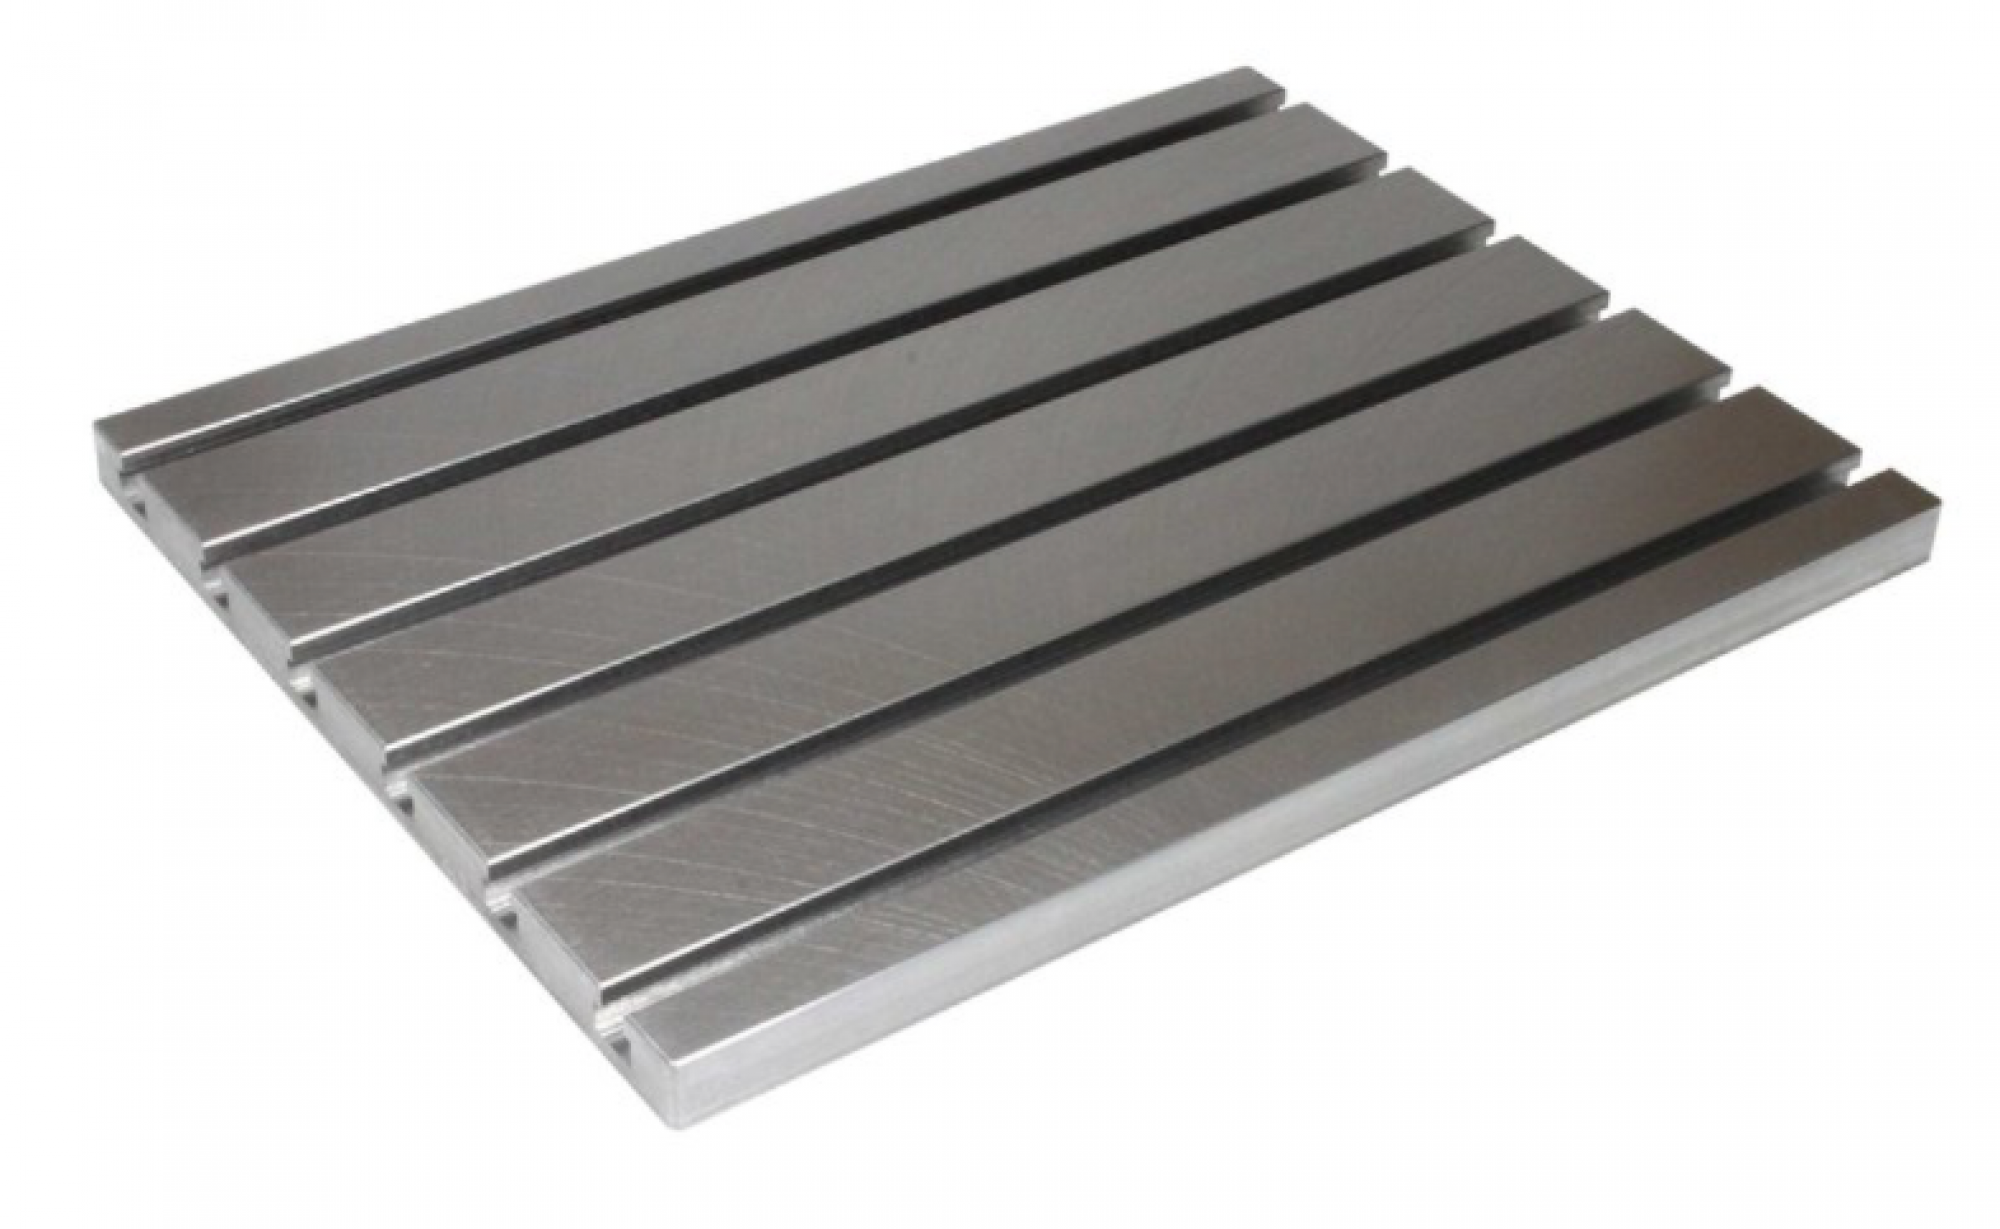 Steel T-slot plate 10050